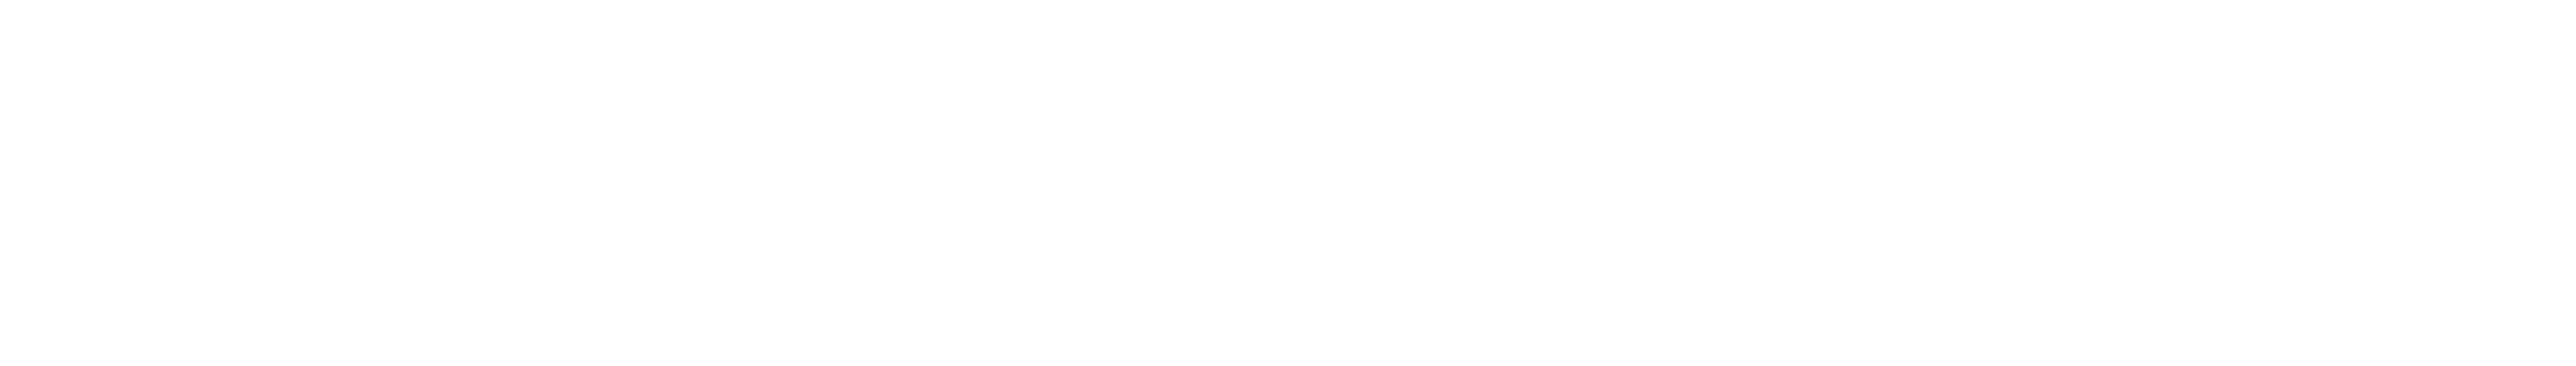 daed.com